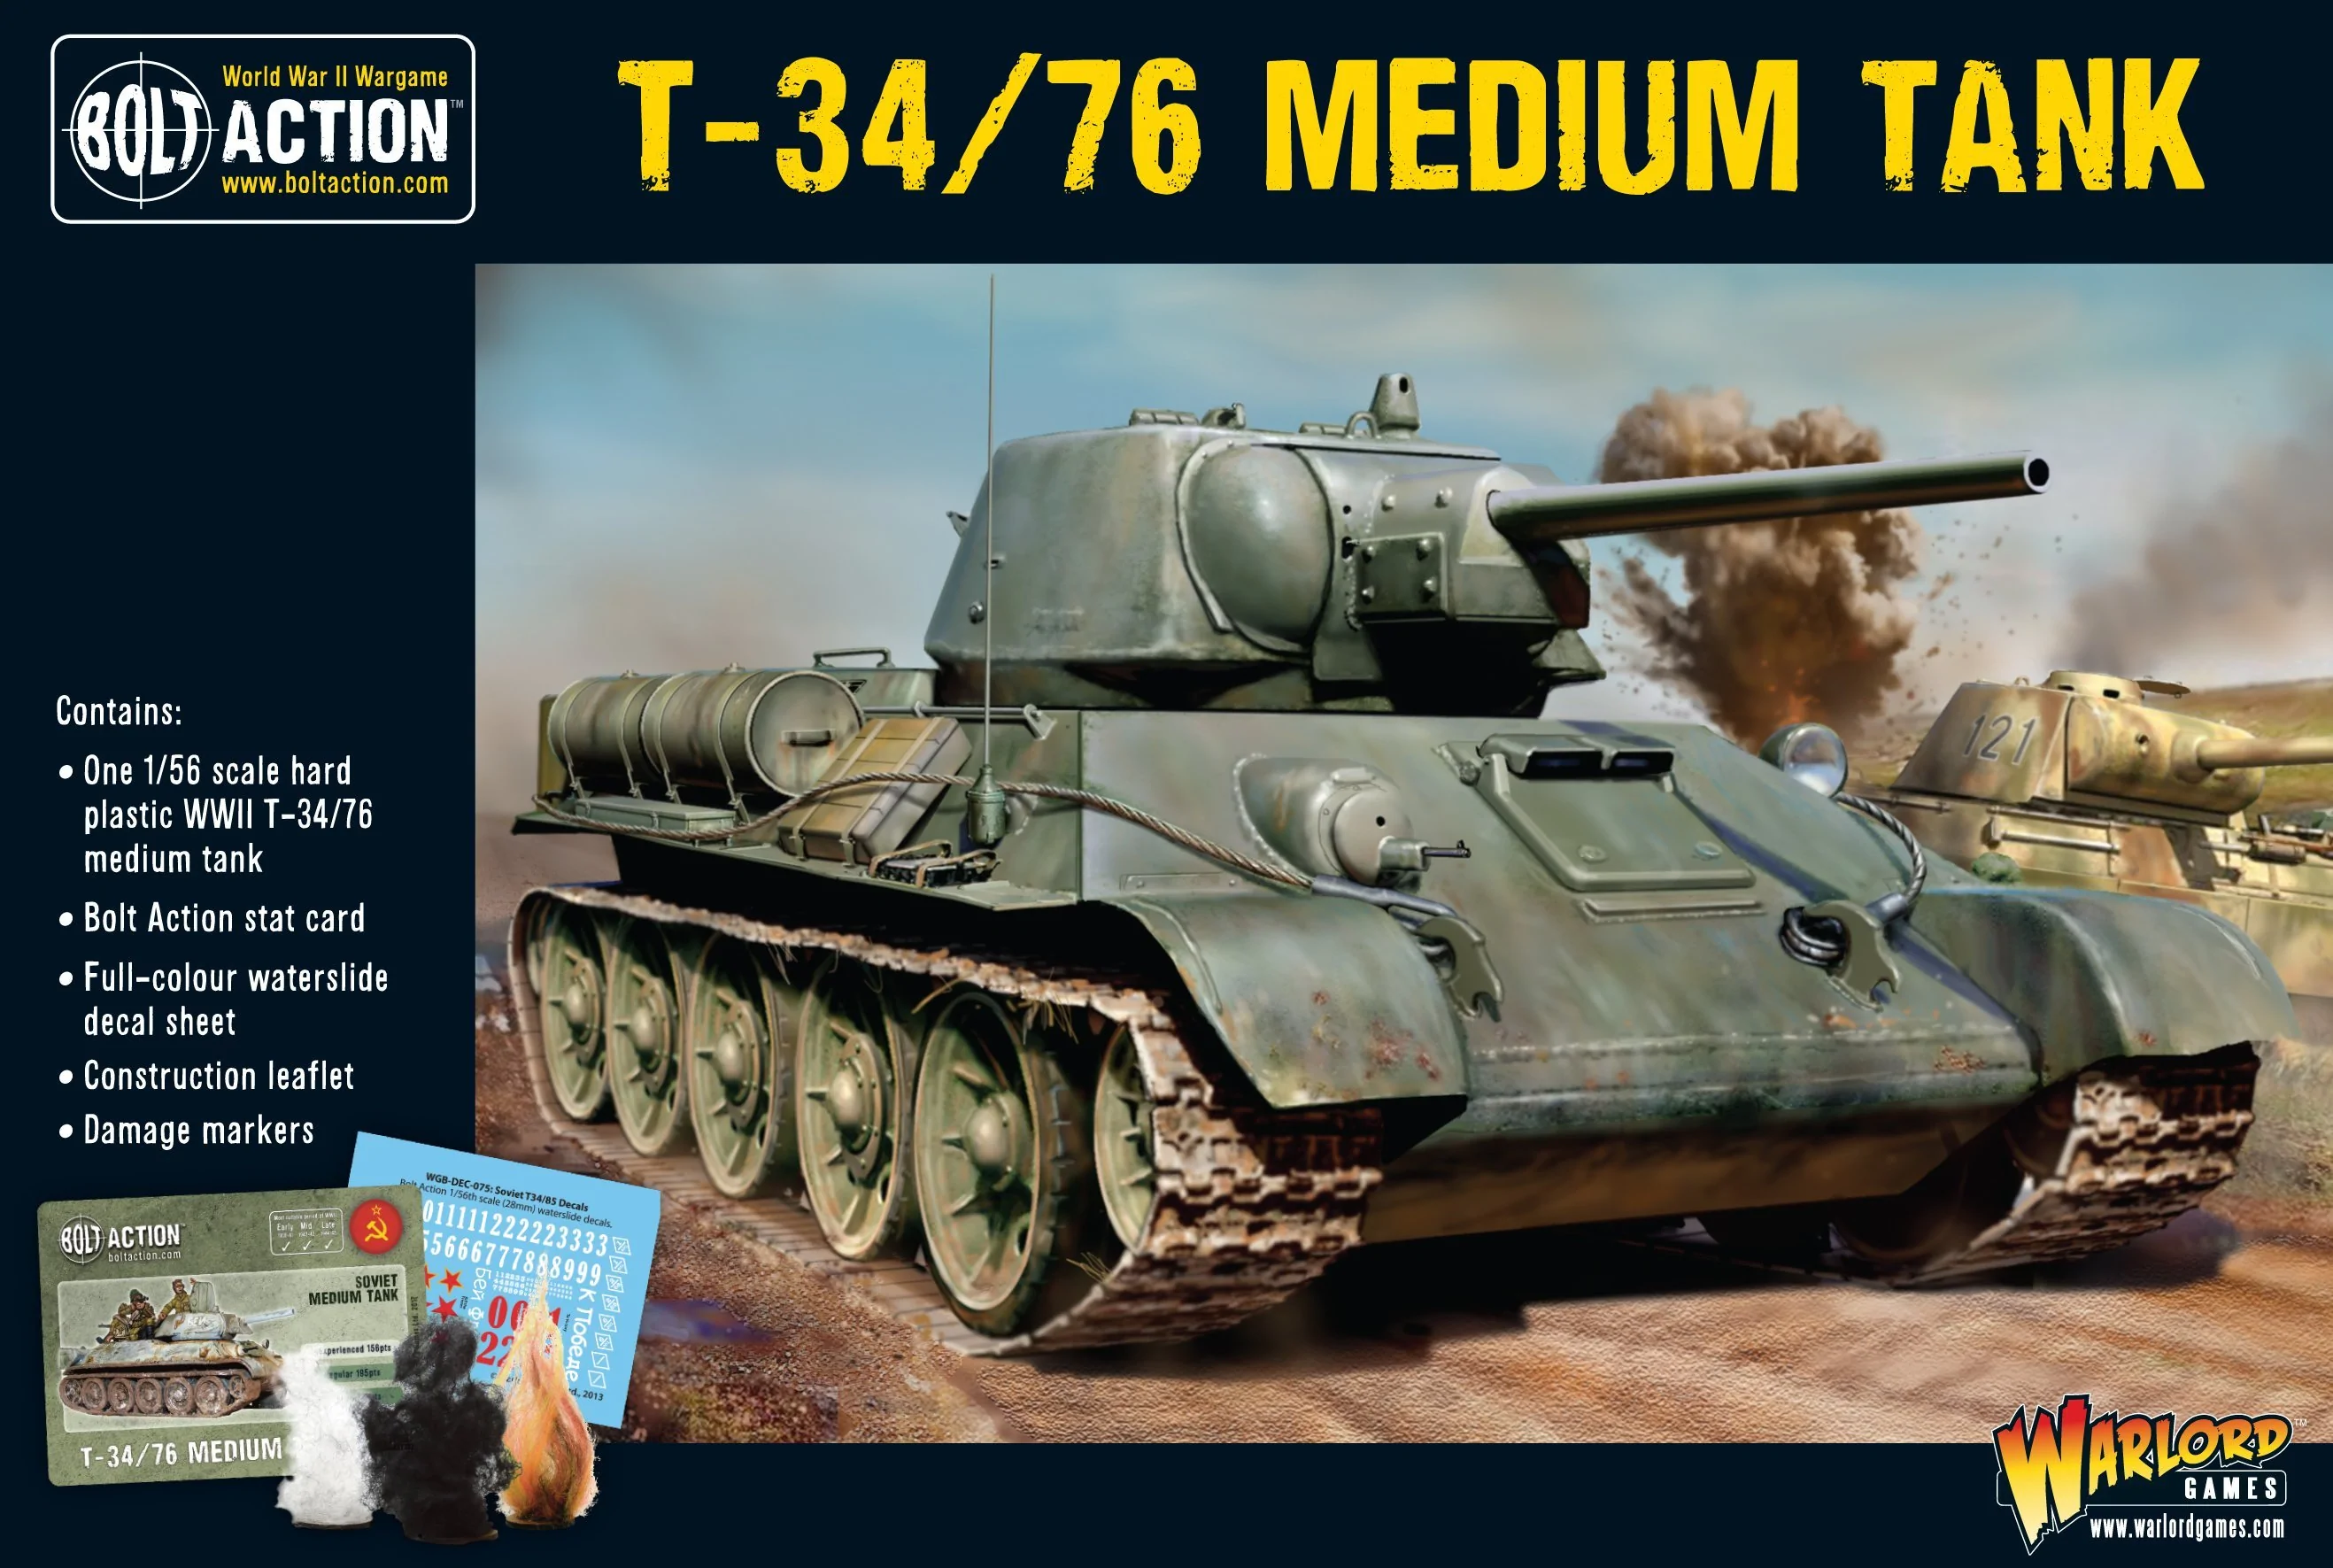 402014007_T-34_76_medium_tank